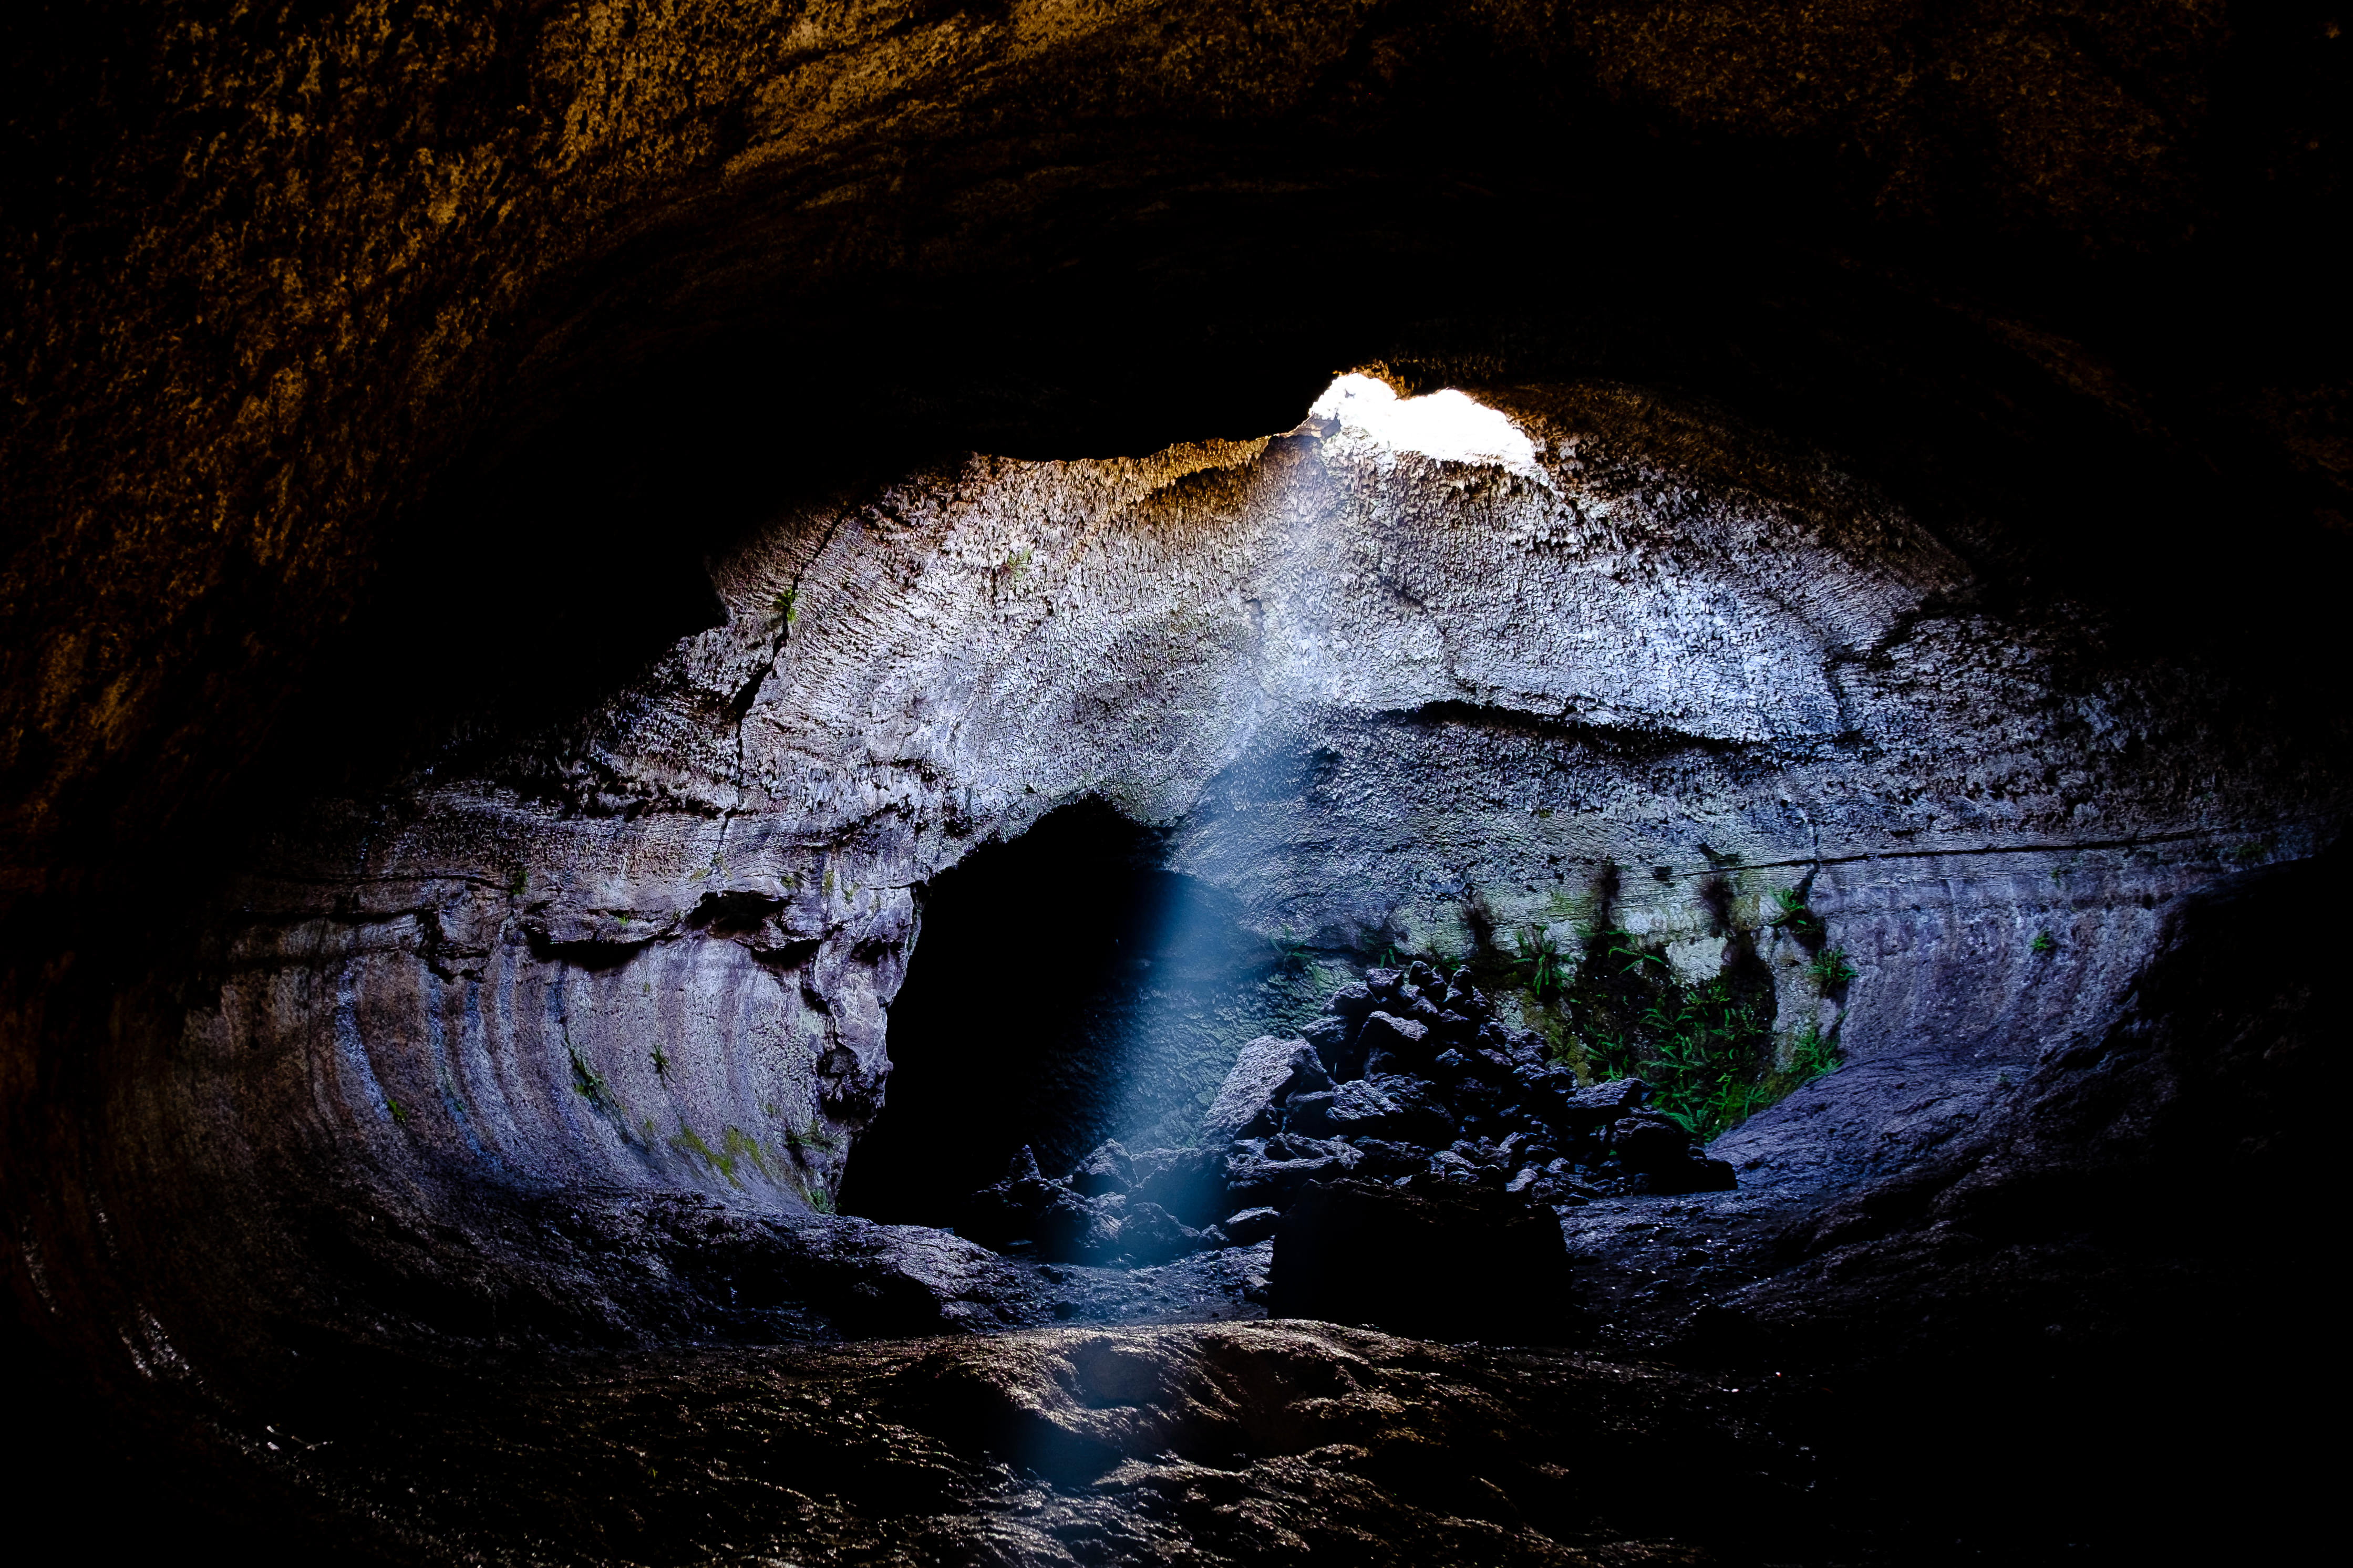 Mount Etna Caves National Park